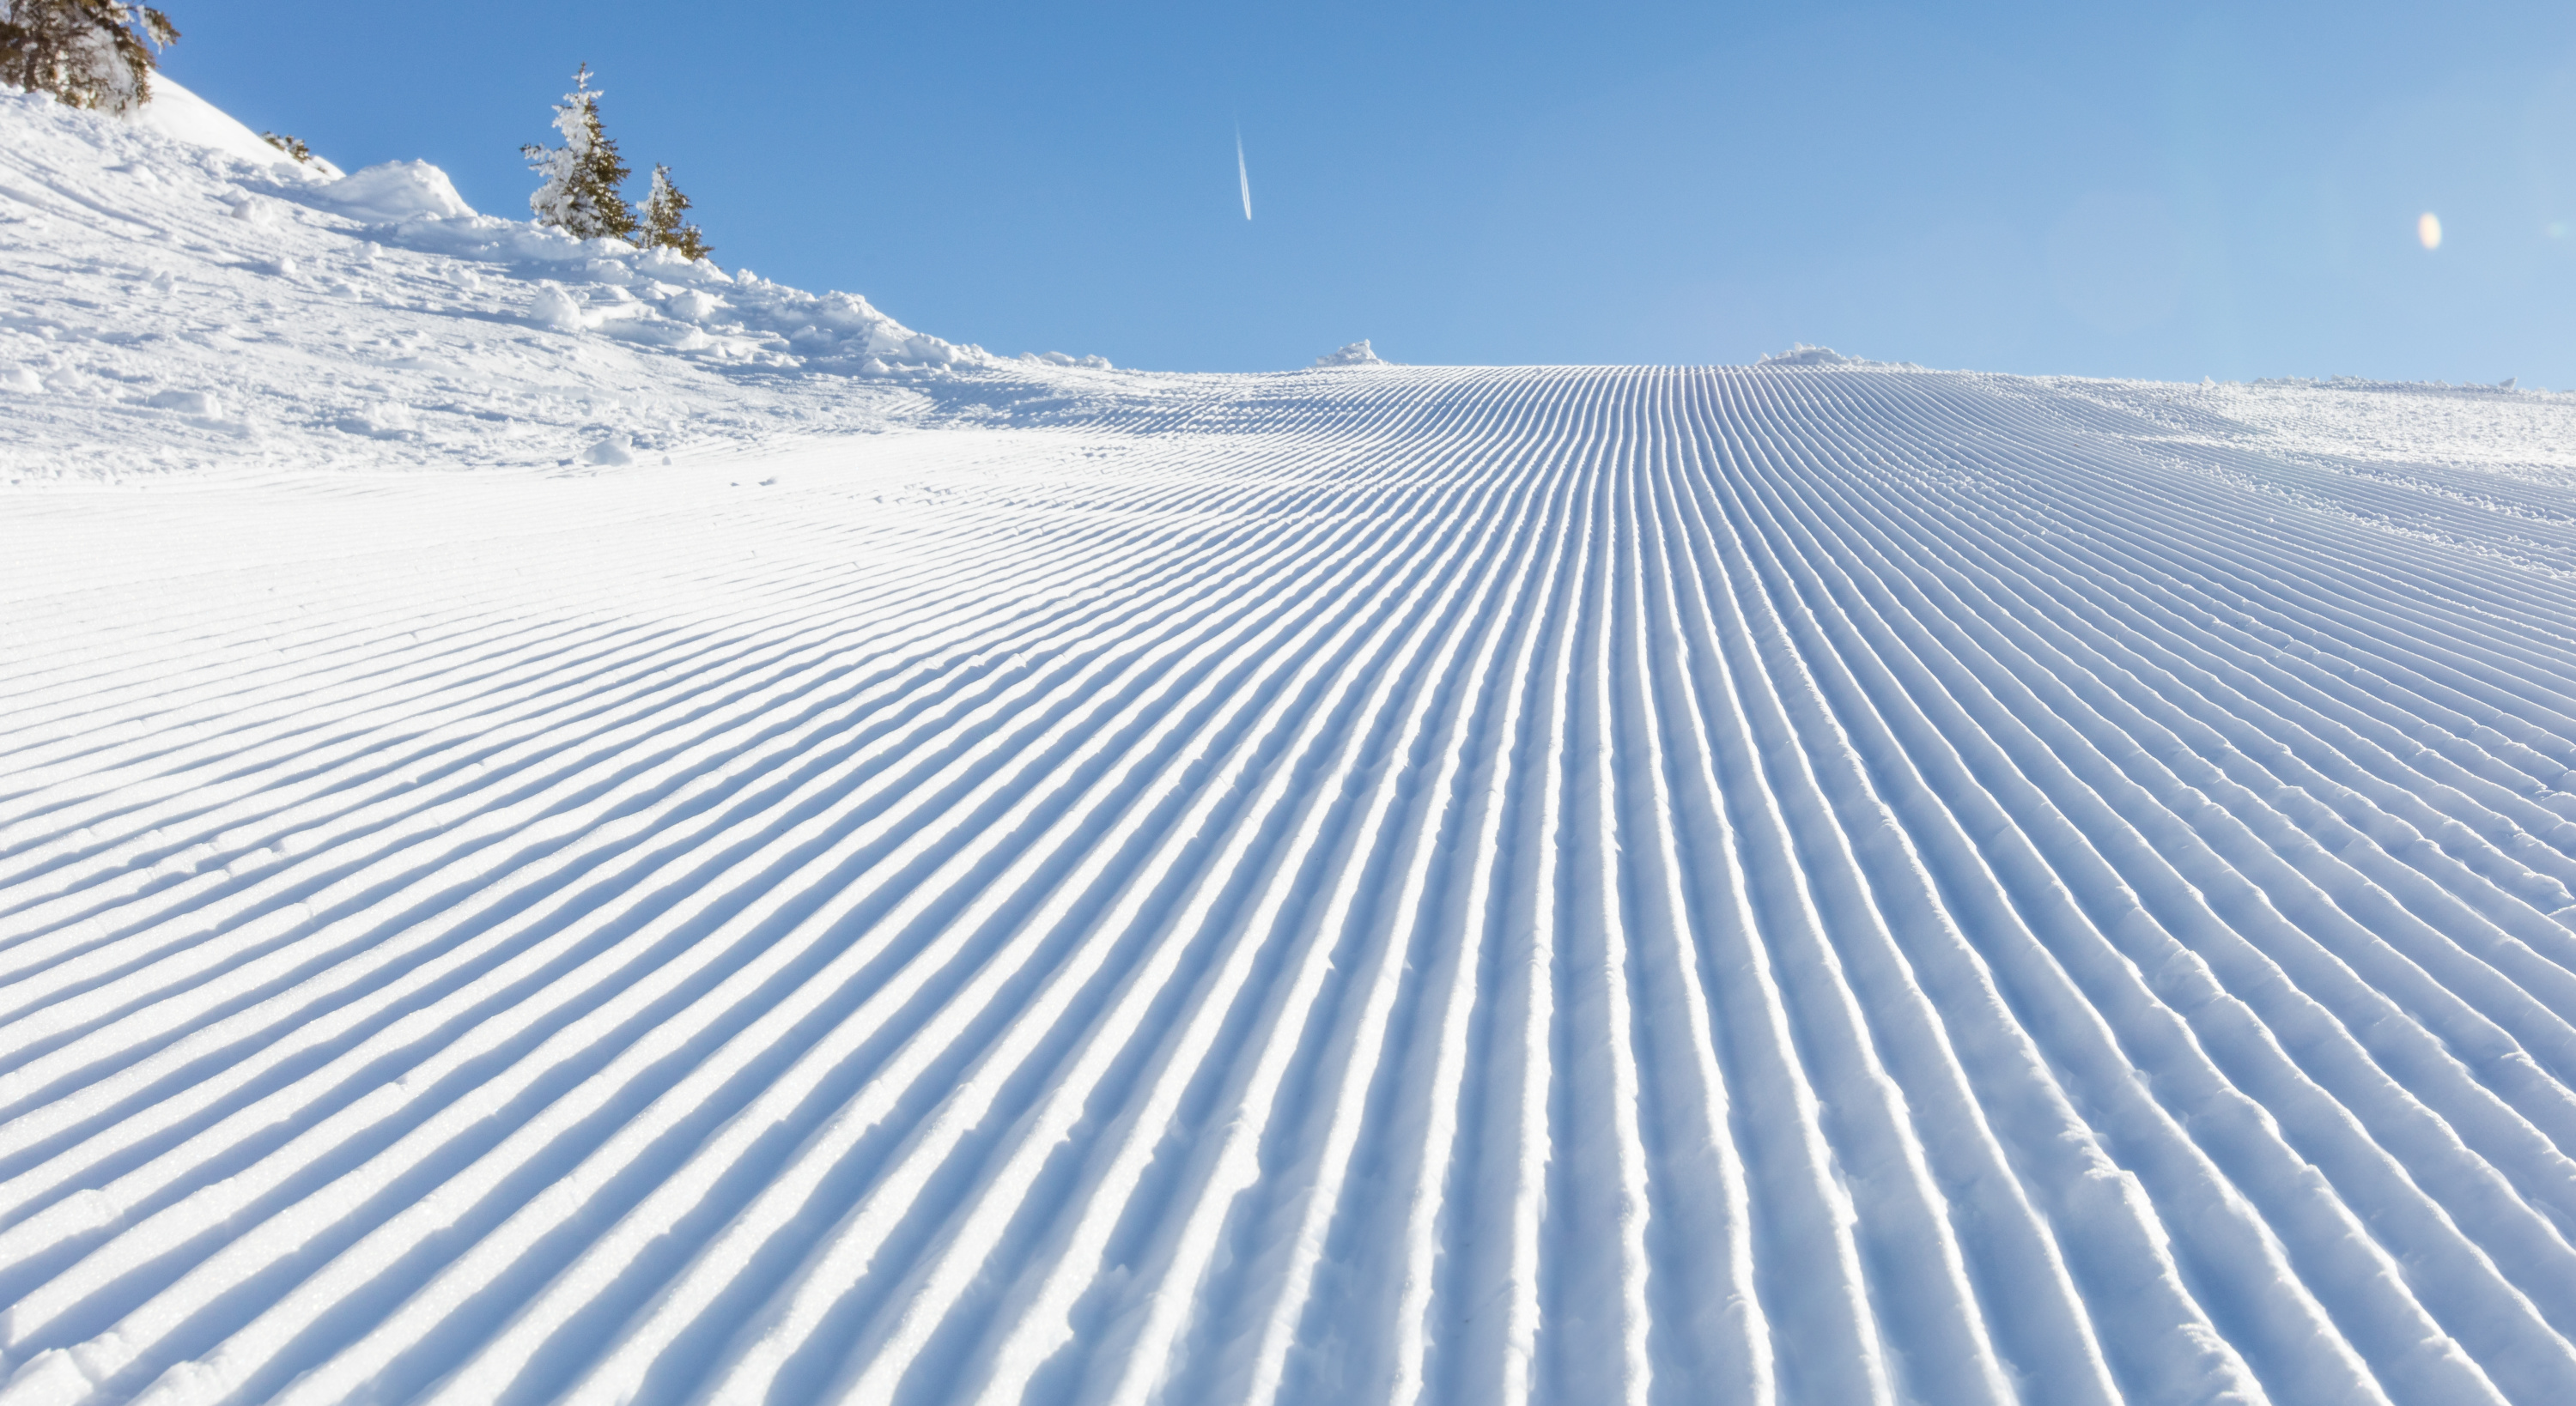 Ski : avant les vacances d'hiver, profitez de cette vente flash